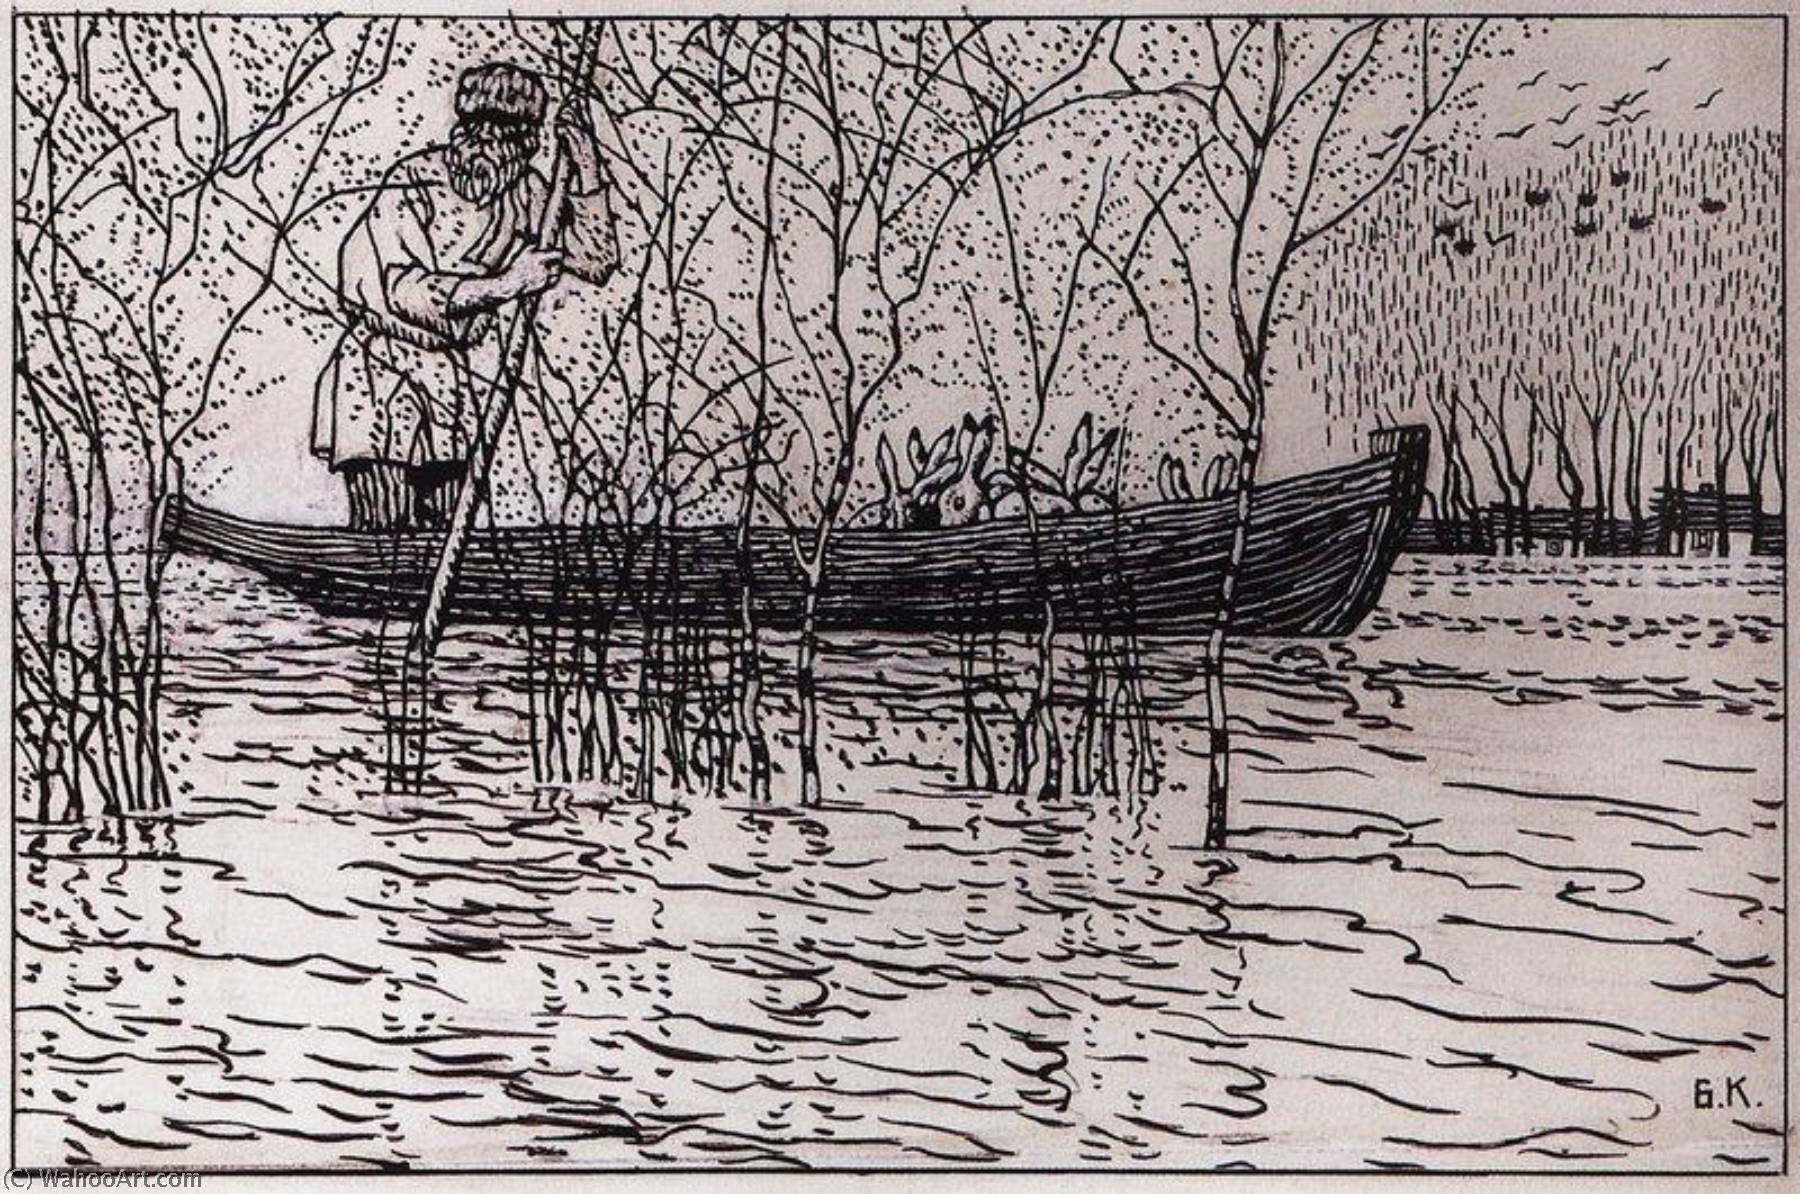 Achat Reproductions D'art Une illustration pour Poem Grandpa Mazai et Hares de Nikolai Nekrasov, 1908 de Boris Mikhaylovich Kustodiev | ArtsDot.com